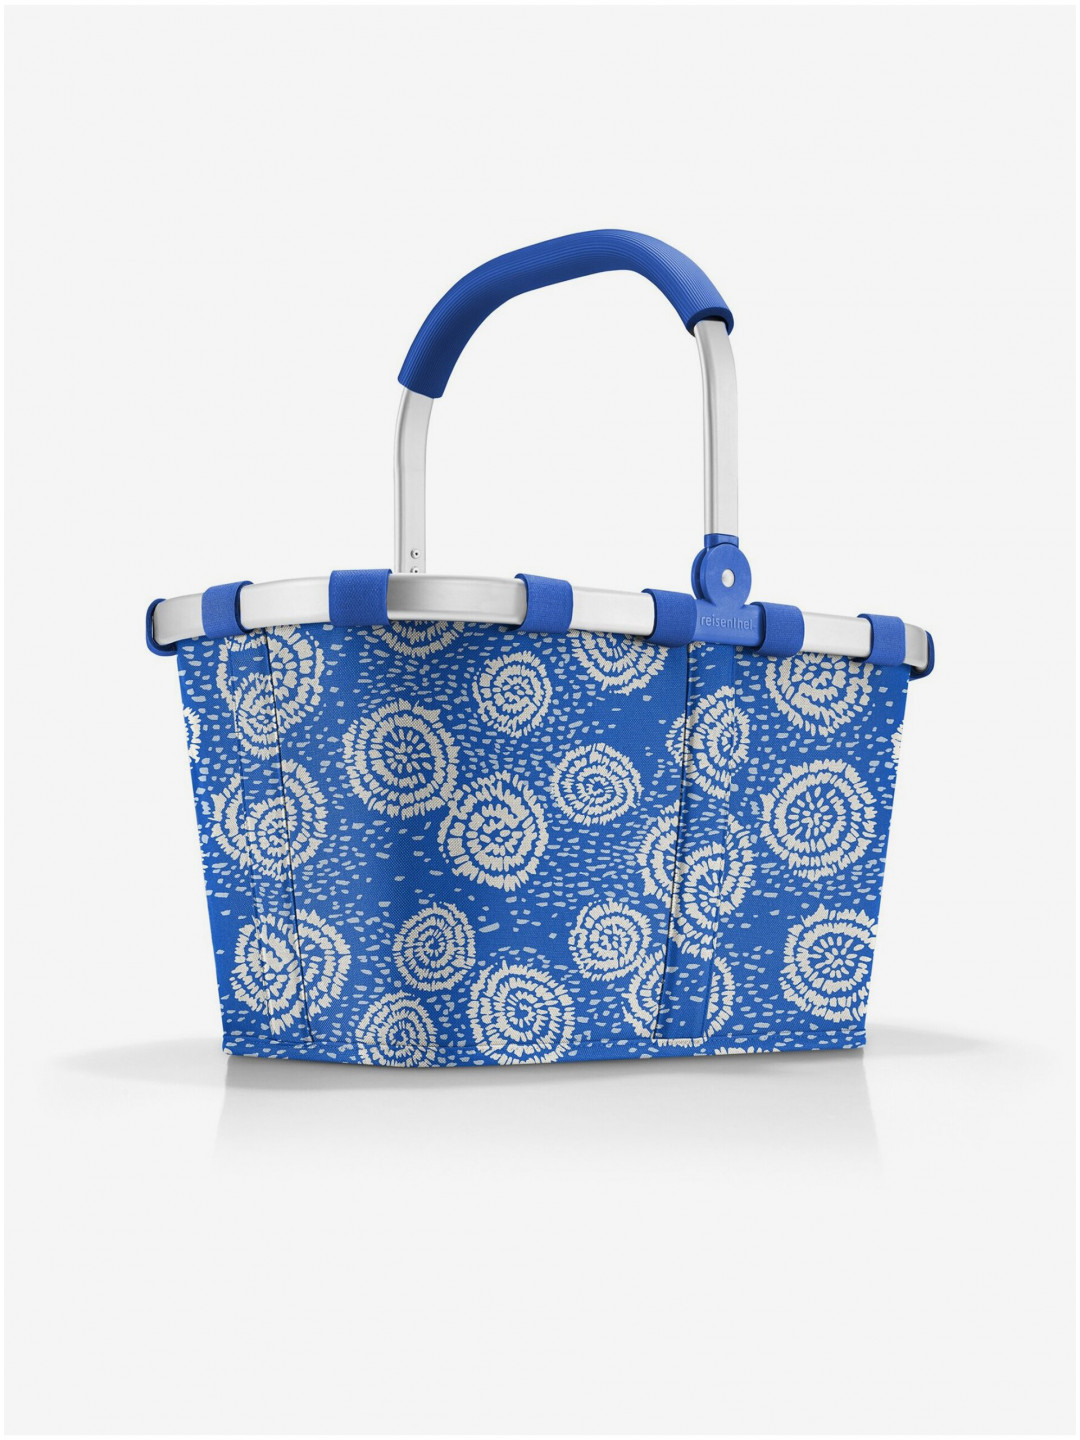 Modrý vzorovaný nákupní košík Reisenthel Carrybag Batik Strong Blue